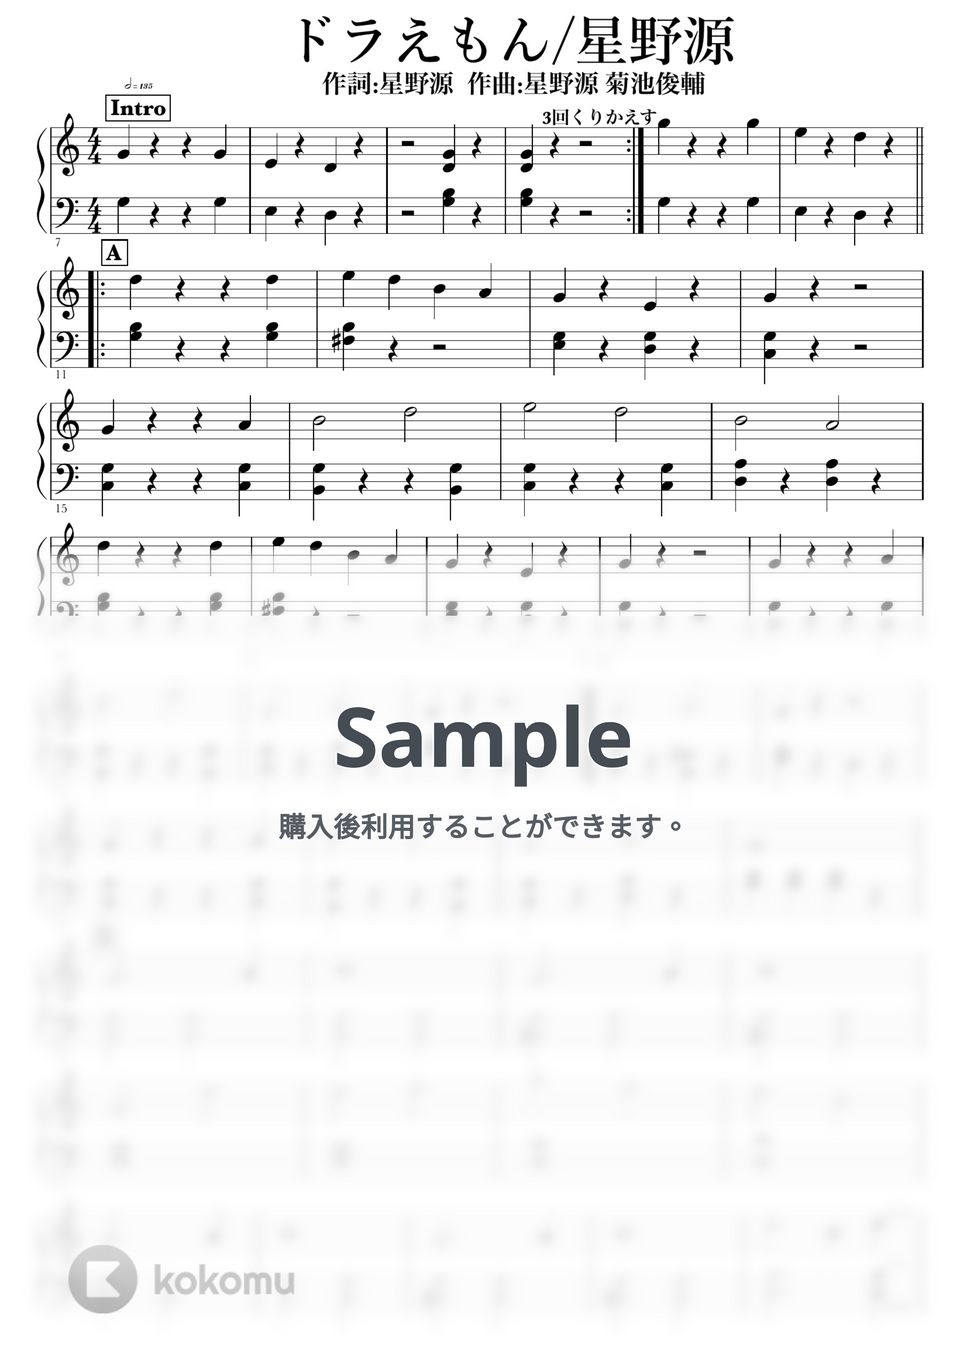 星野源 - ドラえもん by NOTES music